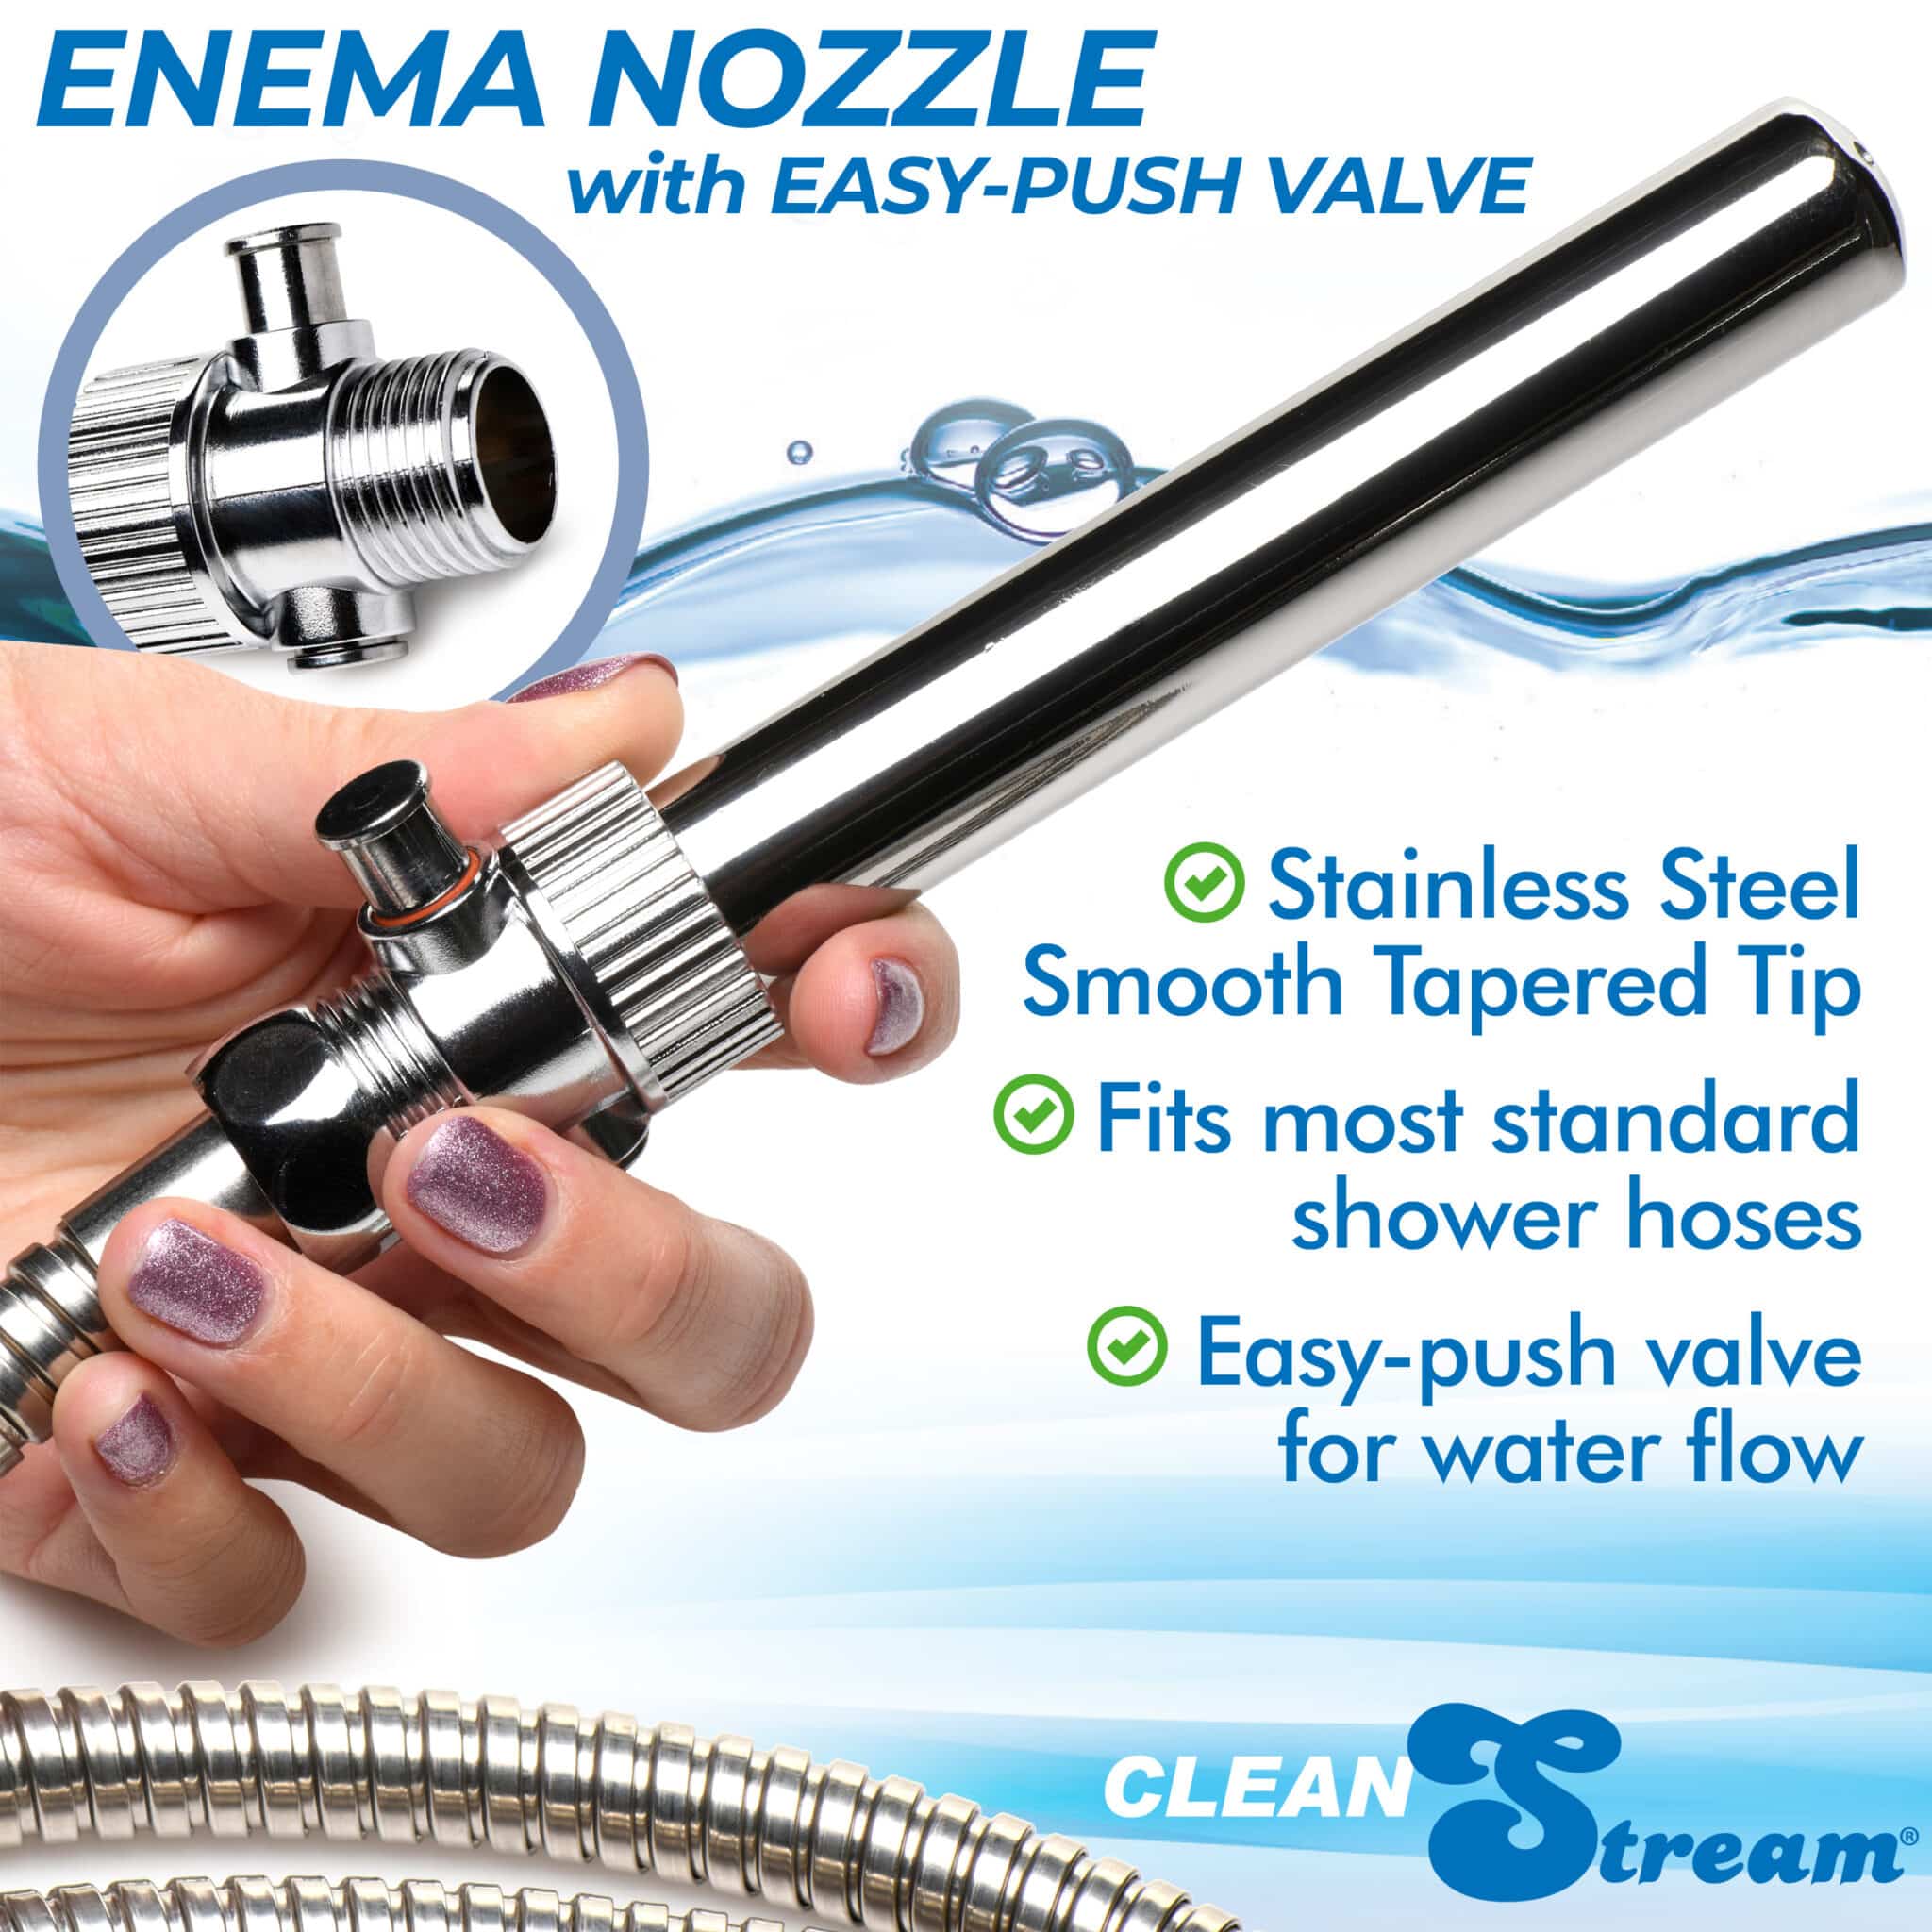 Enema Nozzle with Easy Push Valve